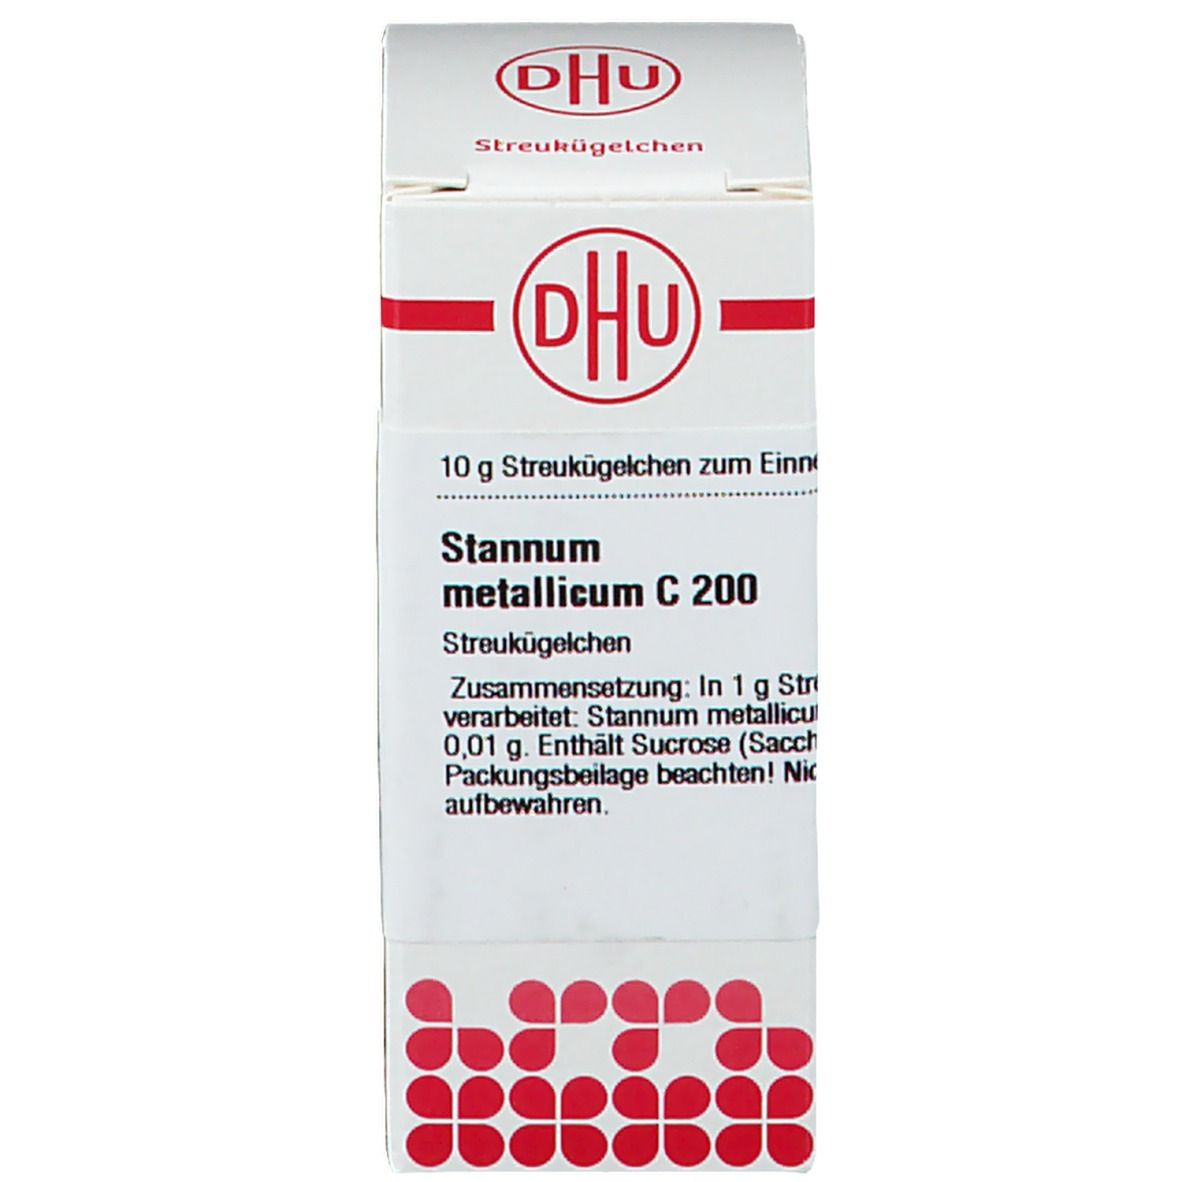 DHU Stannum Metallicum C200